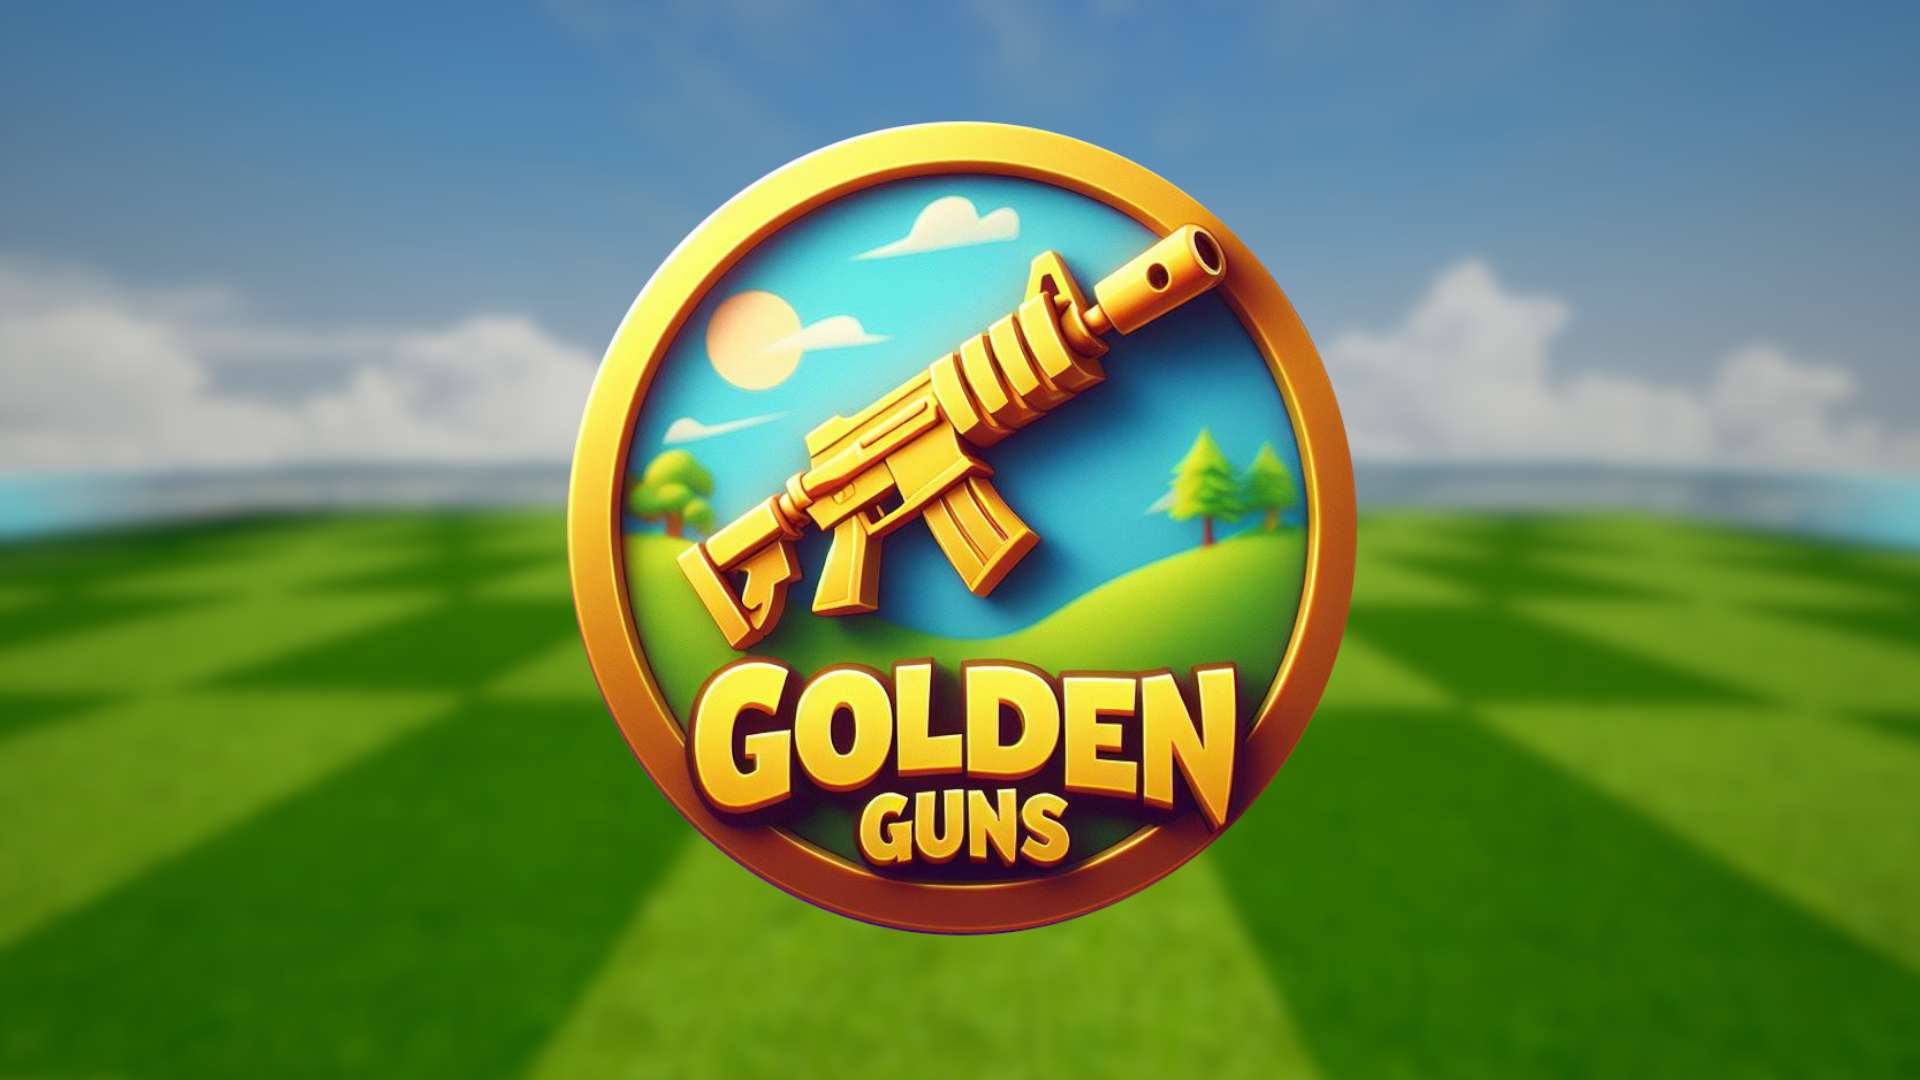 Golden Guns - Free For All